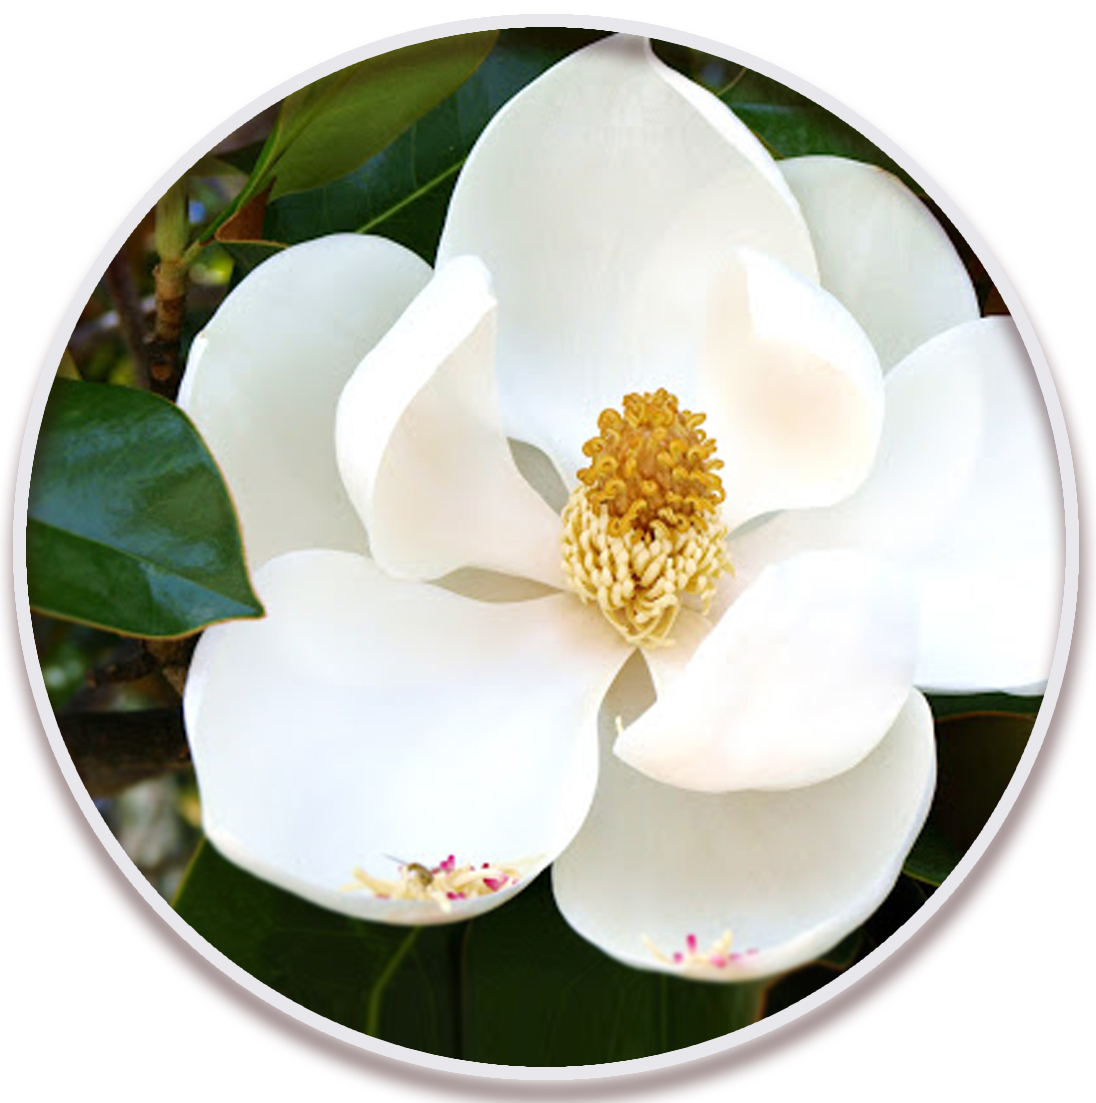 مگنولیا (Magnolia)